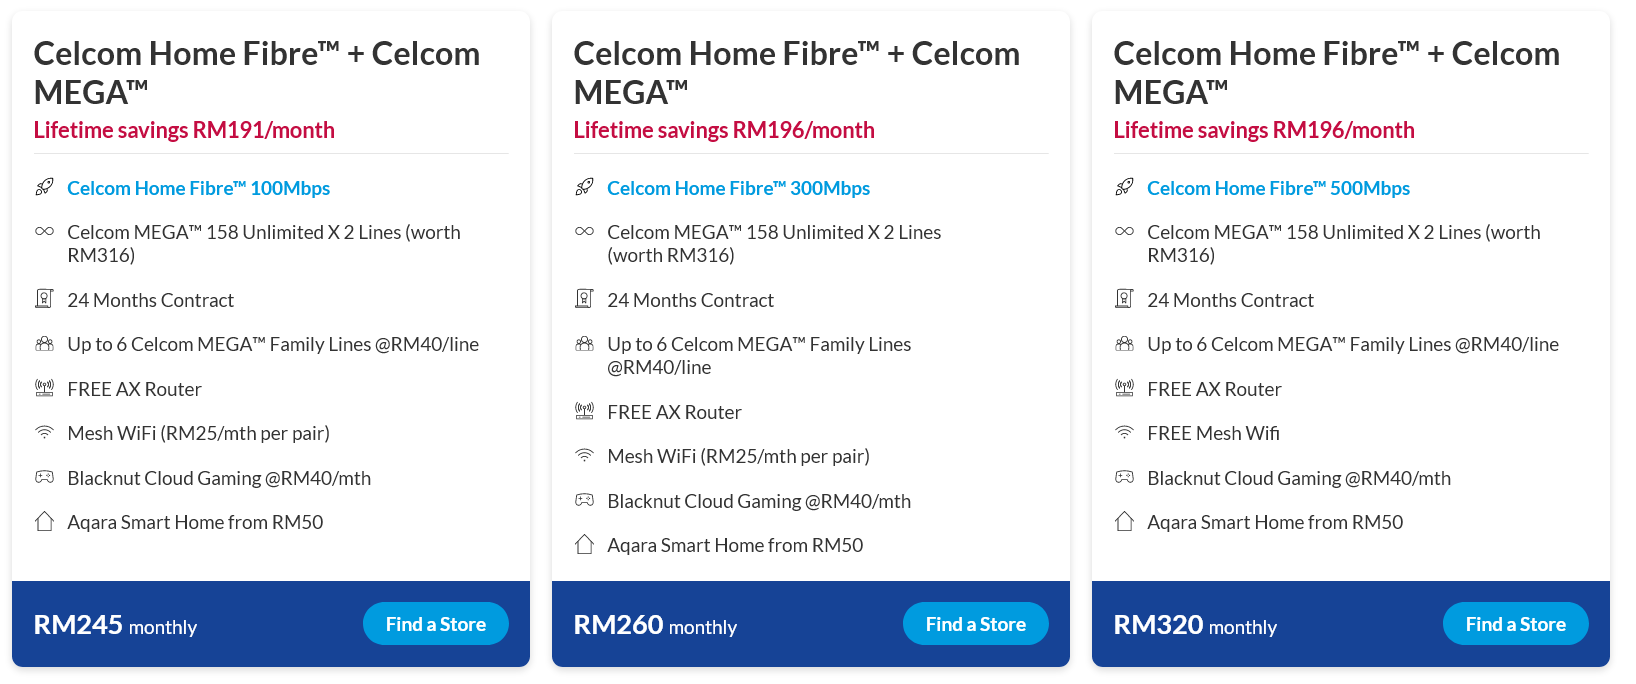 Celcom Home Fibre + Celcom MEGA